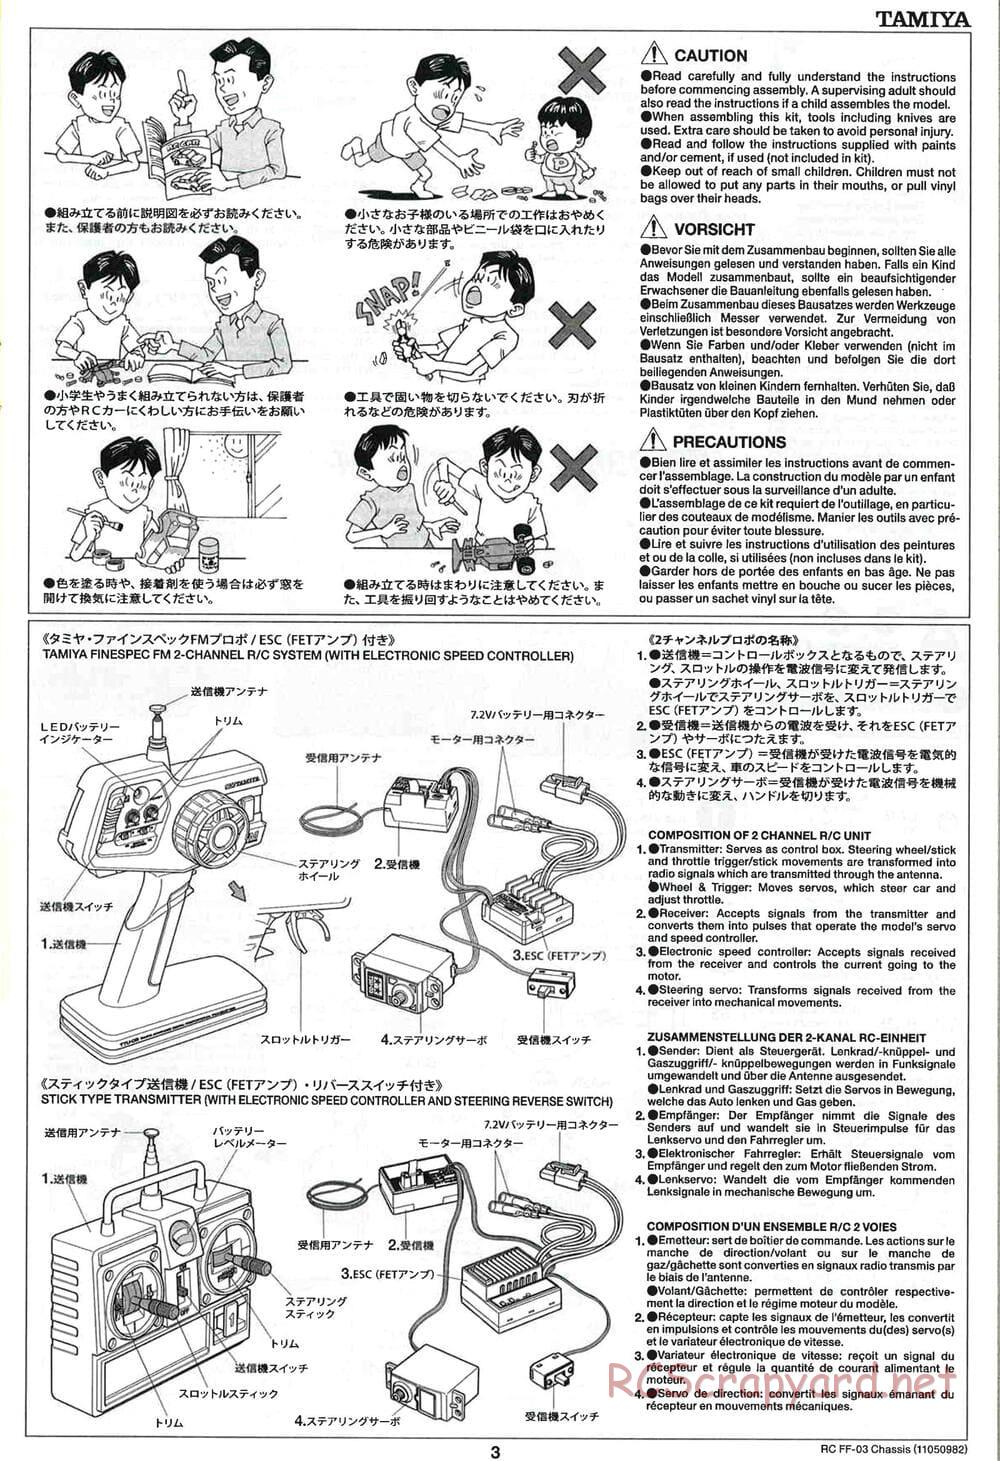 Tamiya - Castrol Honda Civic VTi - FF-03 Chassis - Manual - Page 3